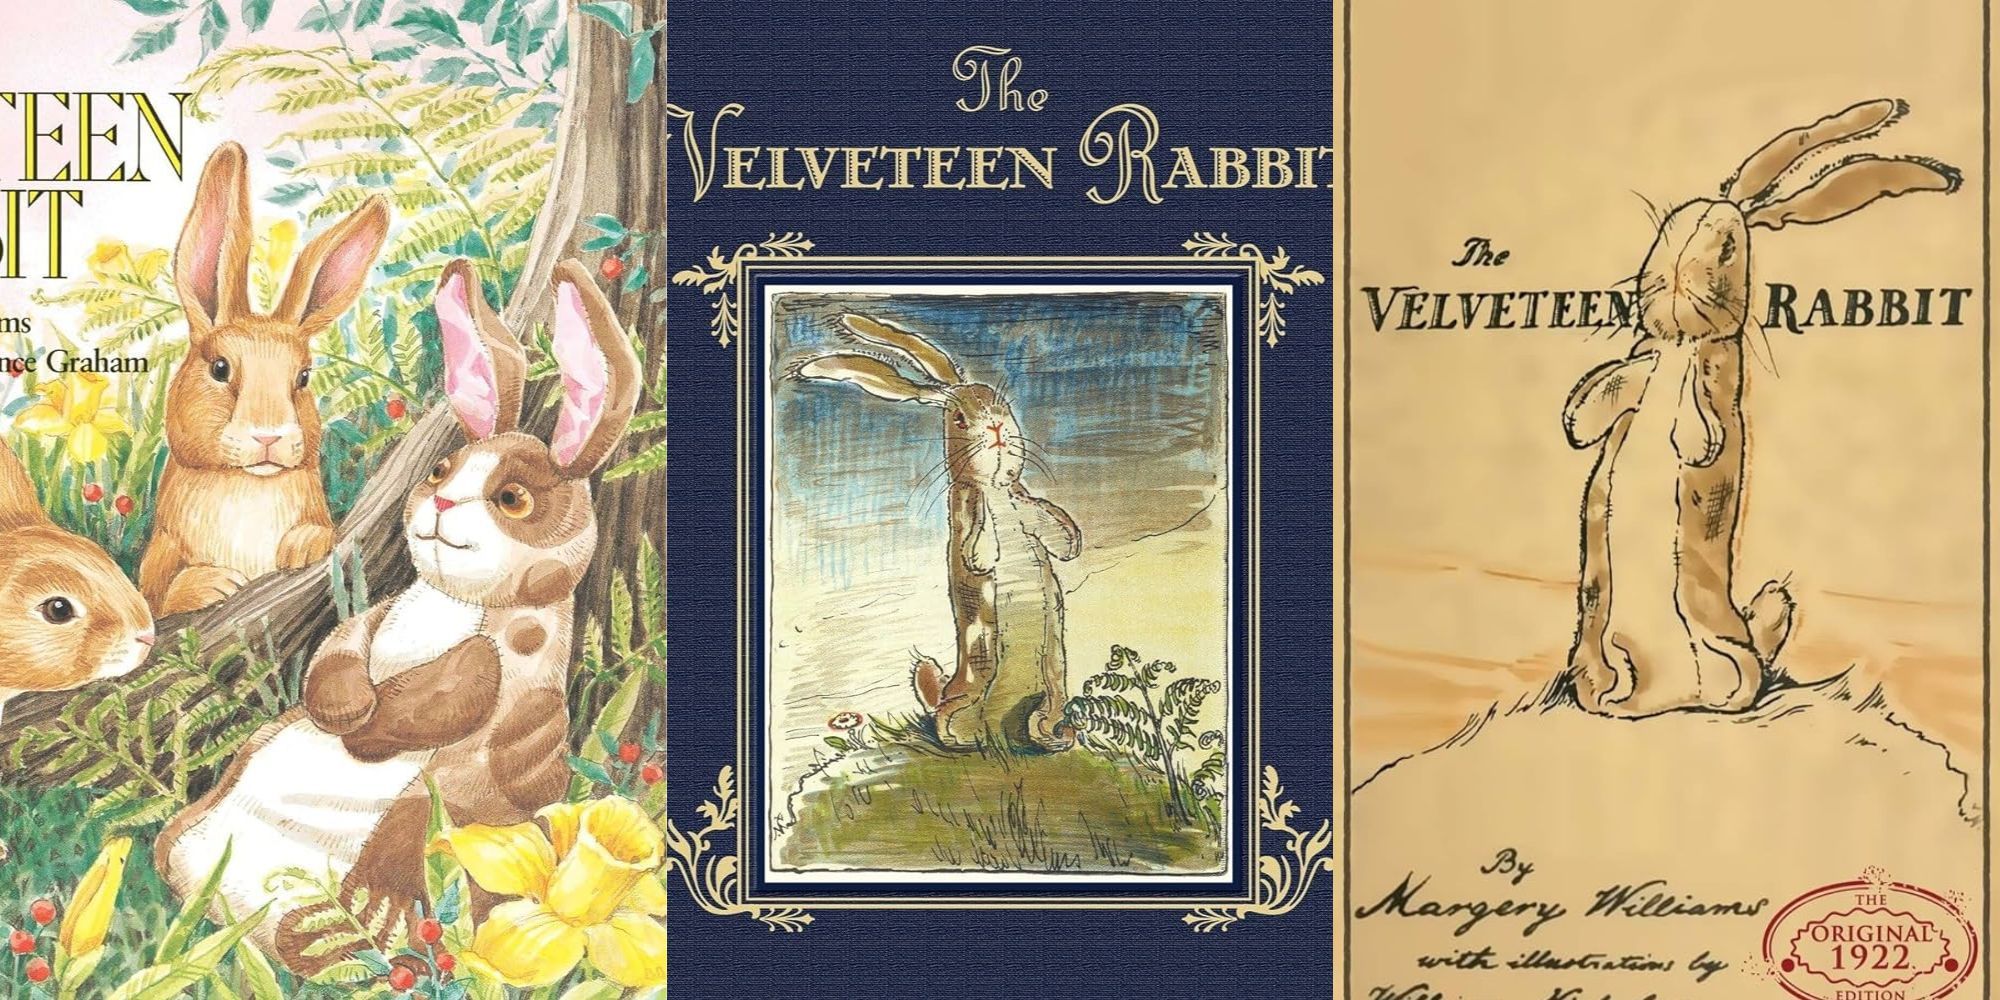 Split image of Velveteen Rabbit book covers